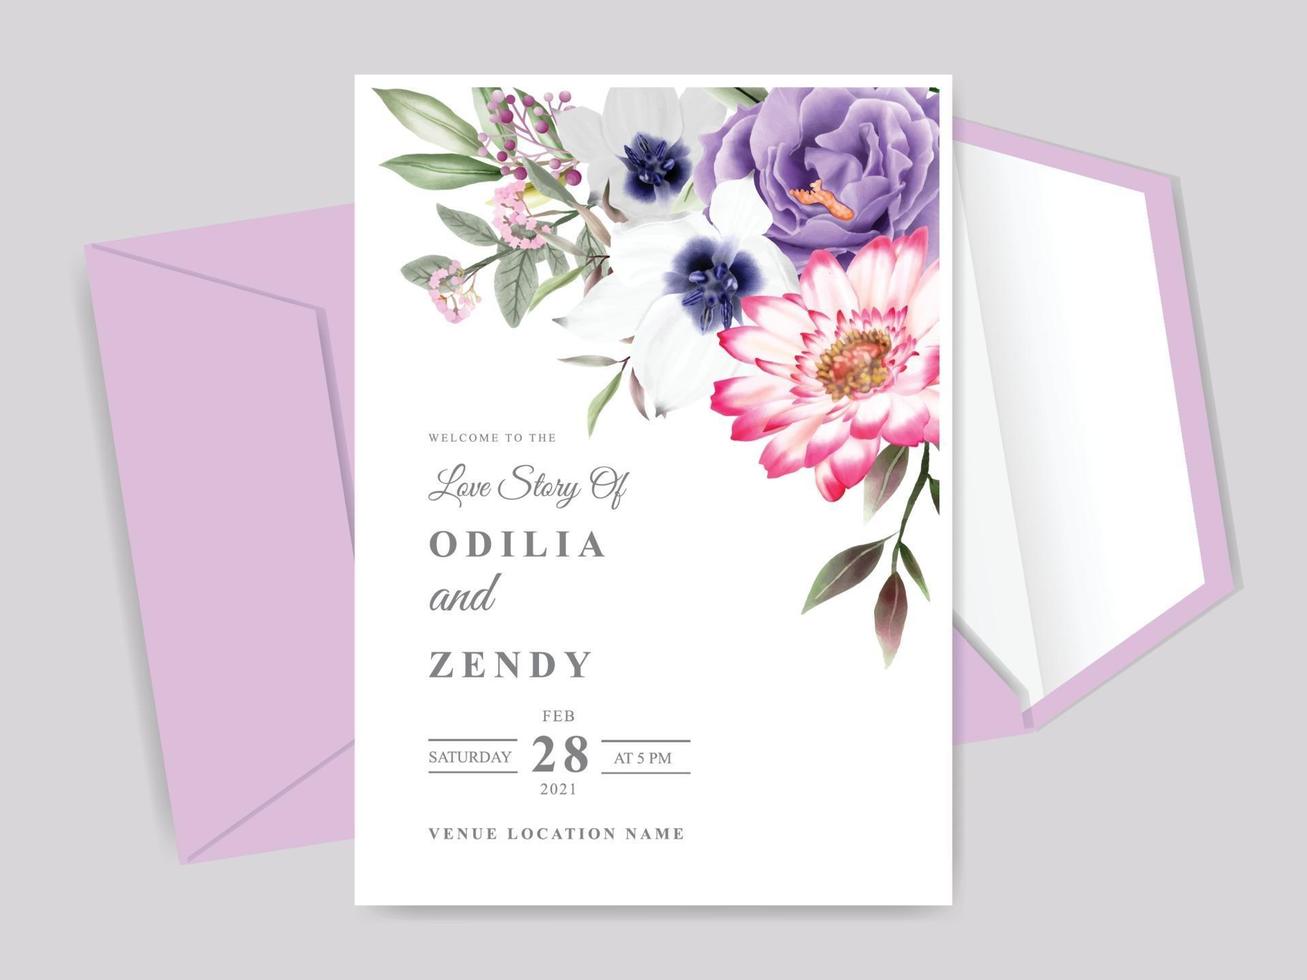 Modelo de cartão de convite de casamento desenhado à mão floral bonito e elegante vetor